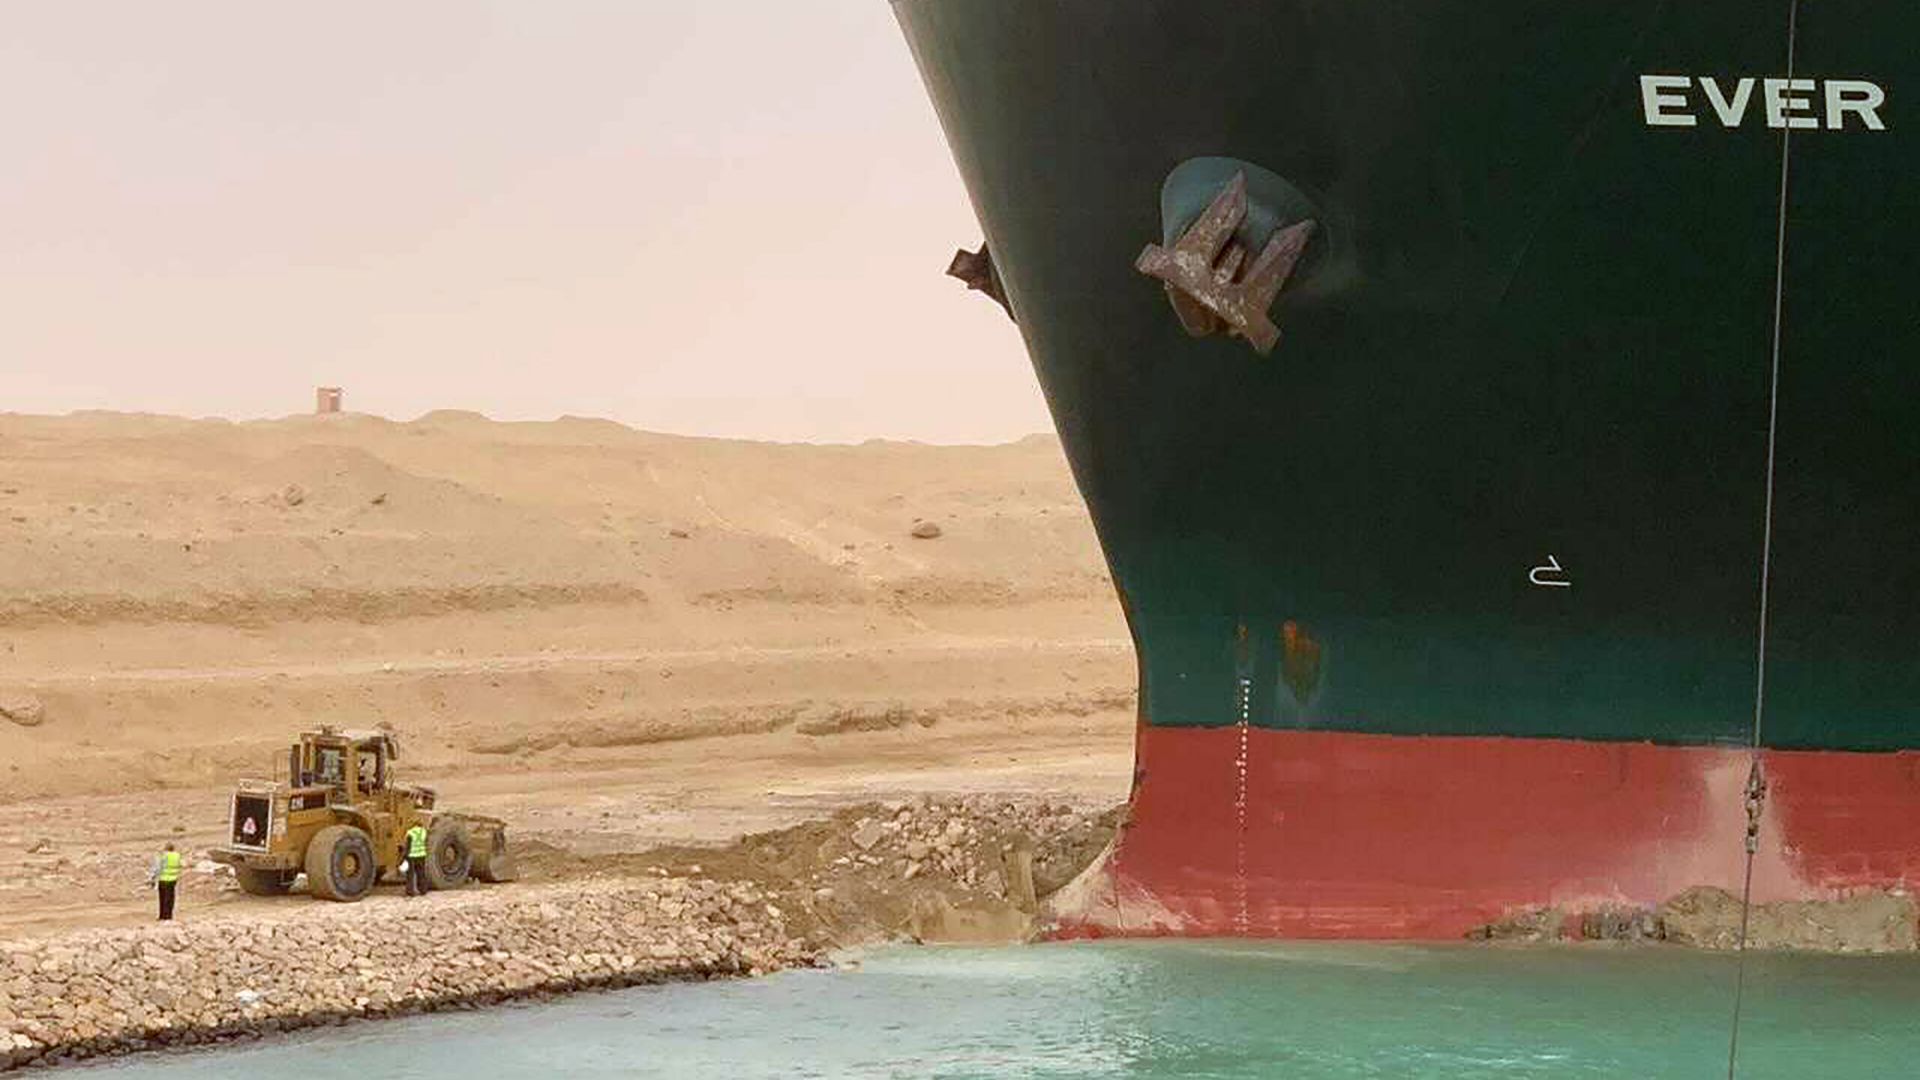 След пет дни заседналият в Суецкия канал контейнеровоз помръдна